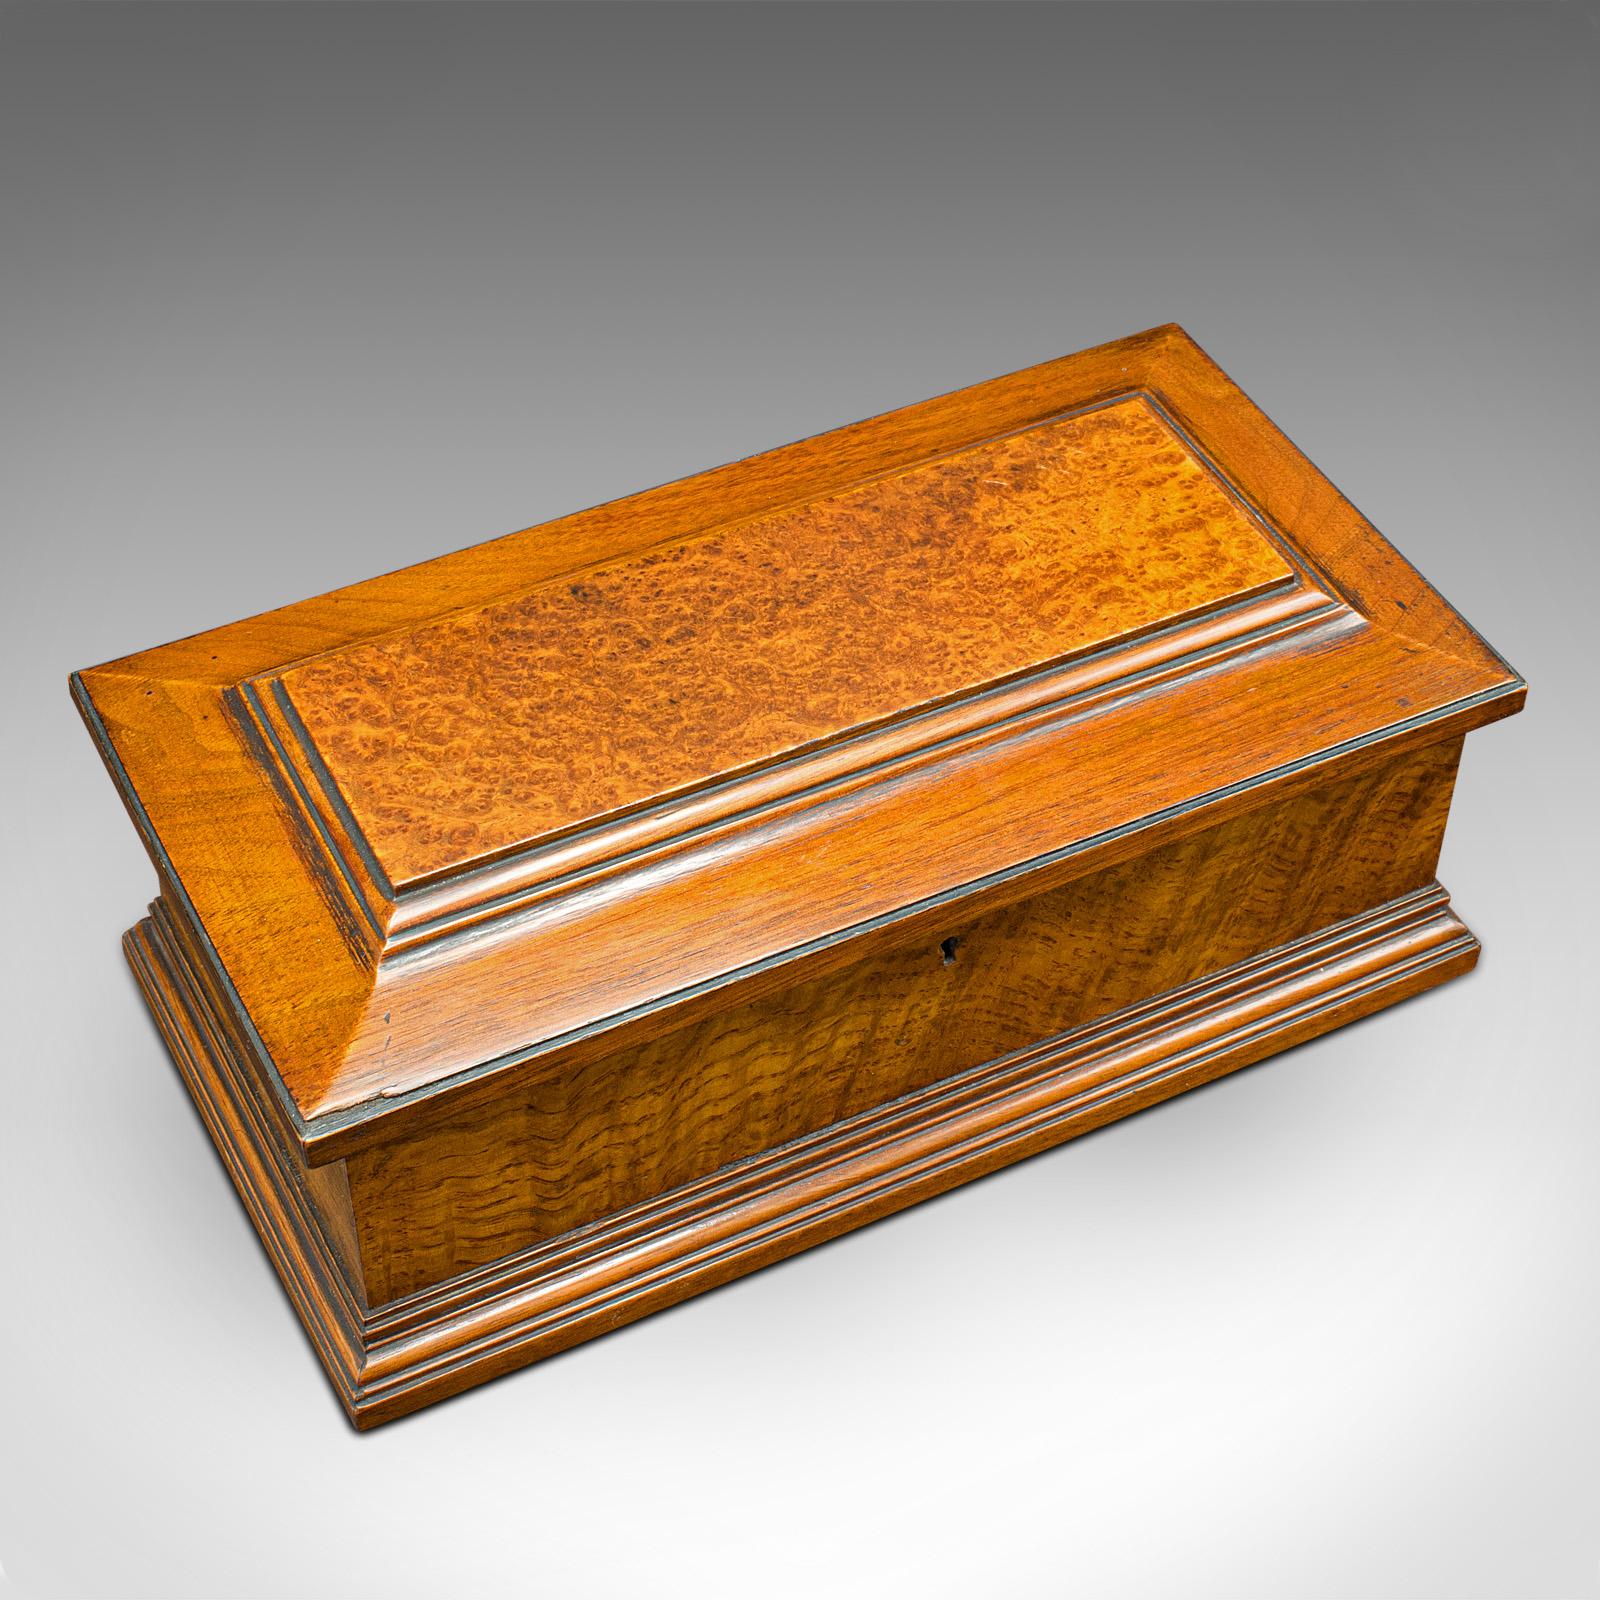 Antique Gentleman's Glove Box, English, Walnut, Burr, Keepsake, Case, Victorian For Sale 1